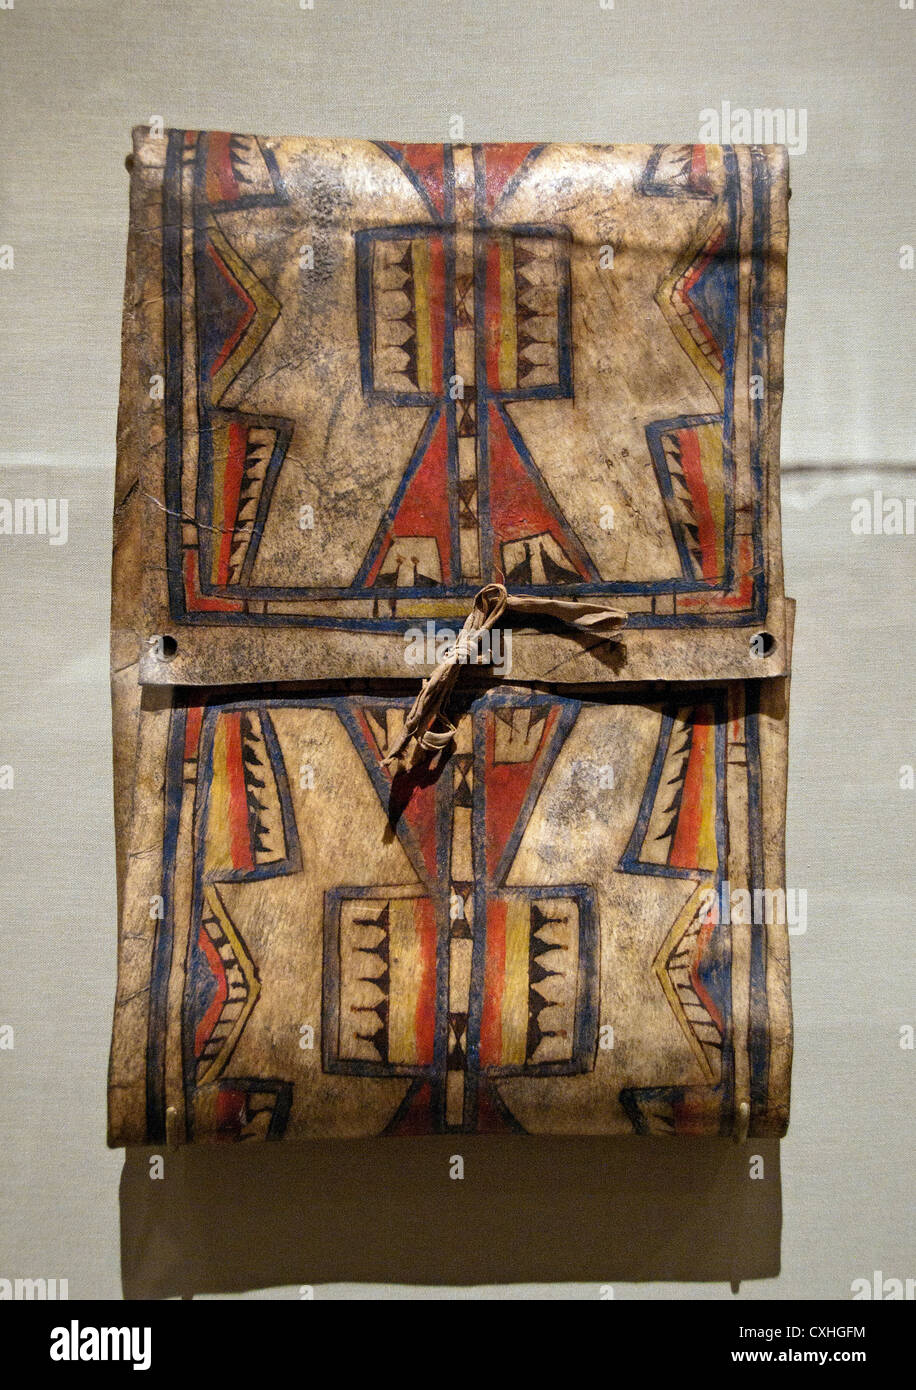 Parfleche ca. 1875 Geografia Stati Uniti d'America Oklahoma Cheyenne Rawhide nativo di pigmento pelle abbronzata cravatte 42 cm Foto Stock